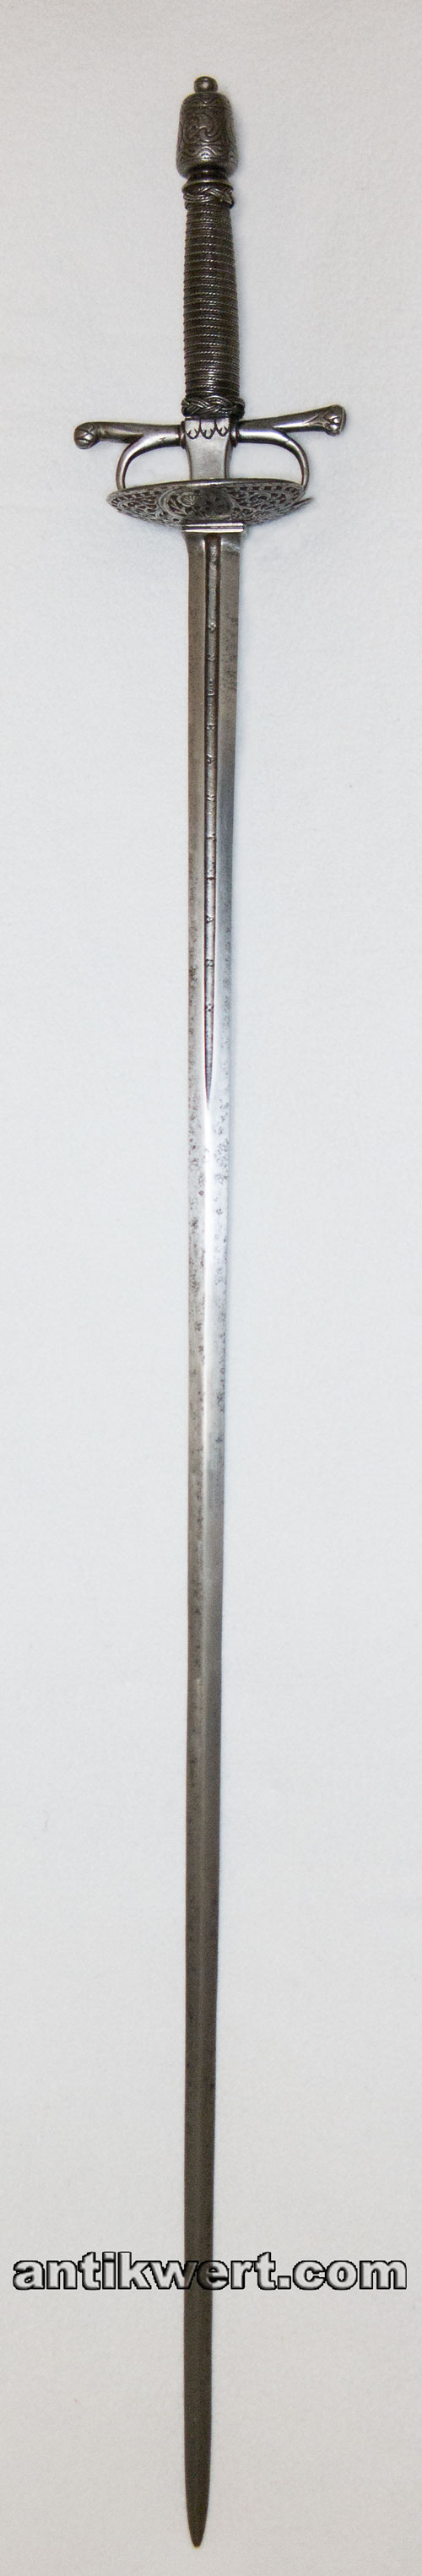 degen-650 mit ornamentalen zierdurchbrechungen im nierenfoermigen stichblatt und klingeninschrift